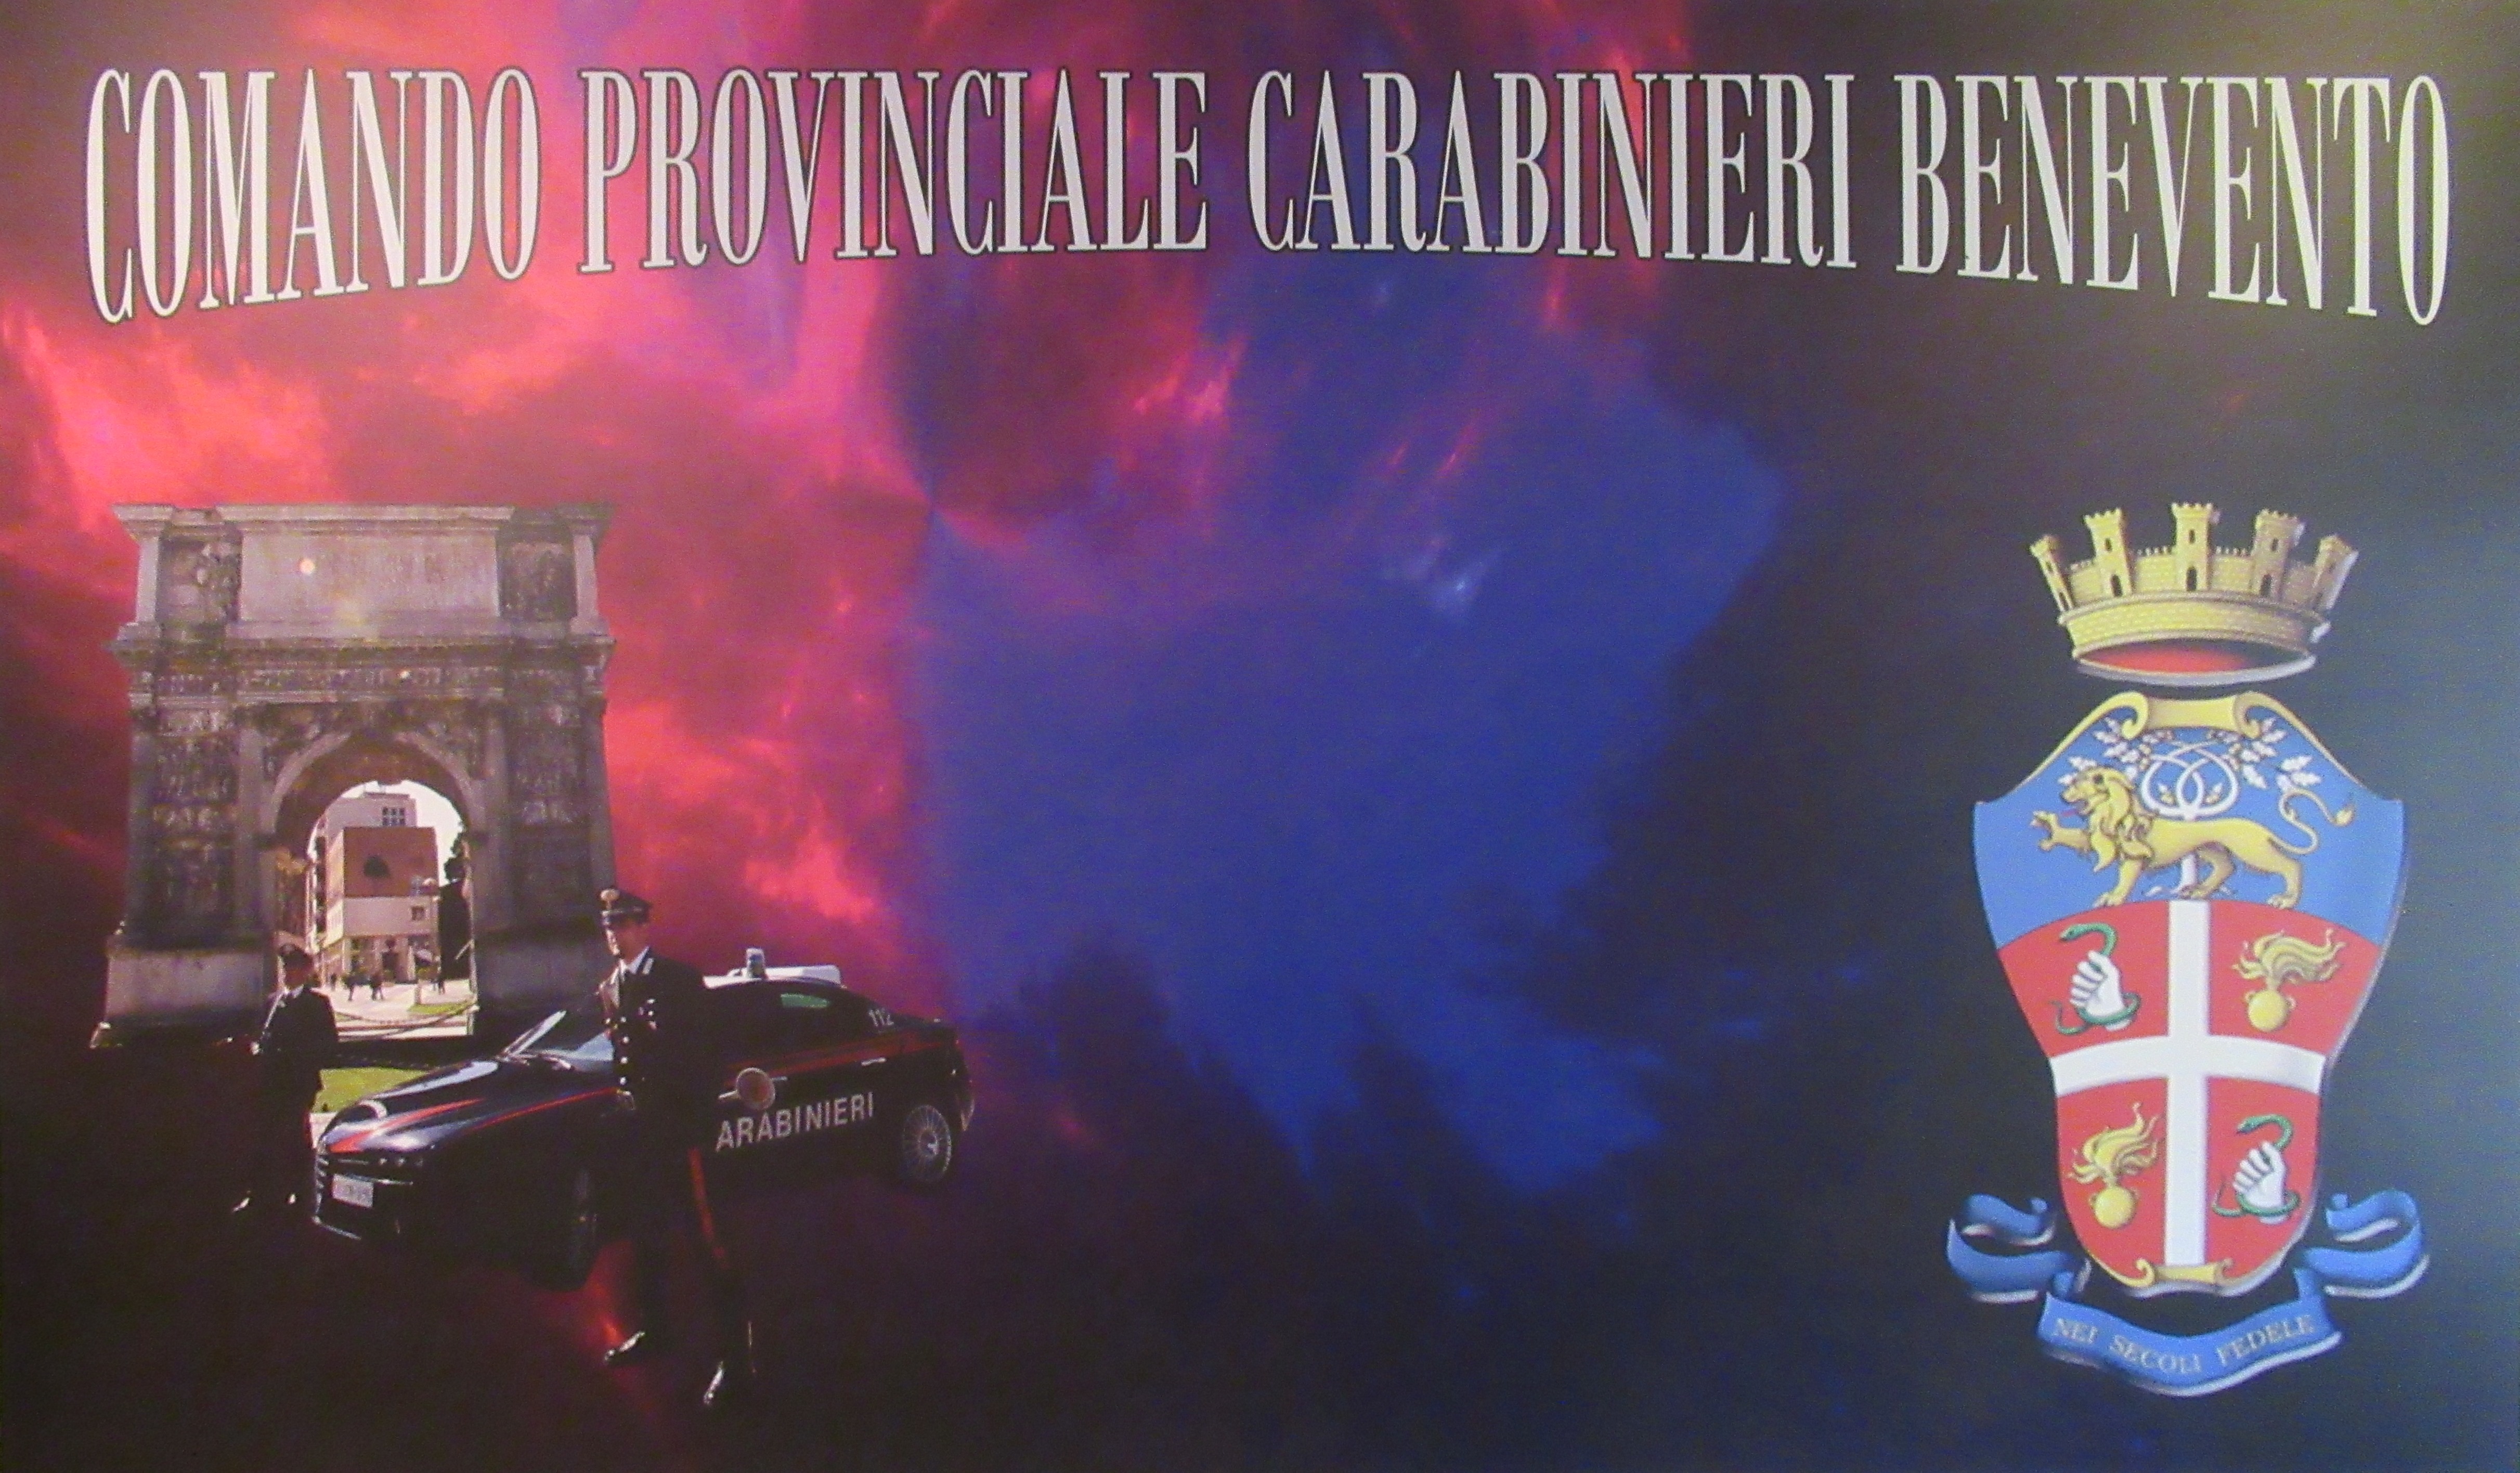 Benevento| Carabinieri: si presenta il calendario storico dell’Arma 2019